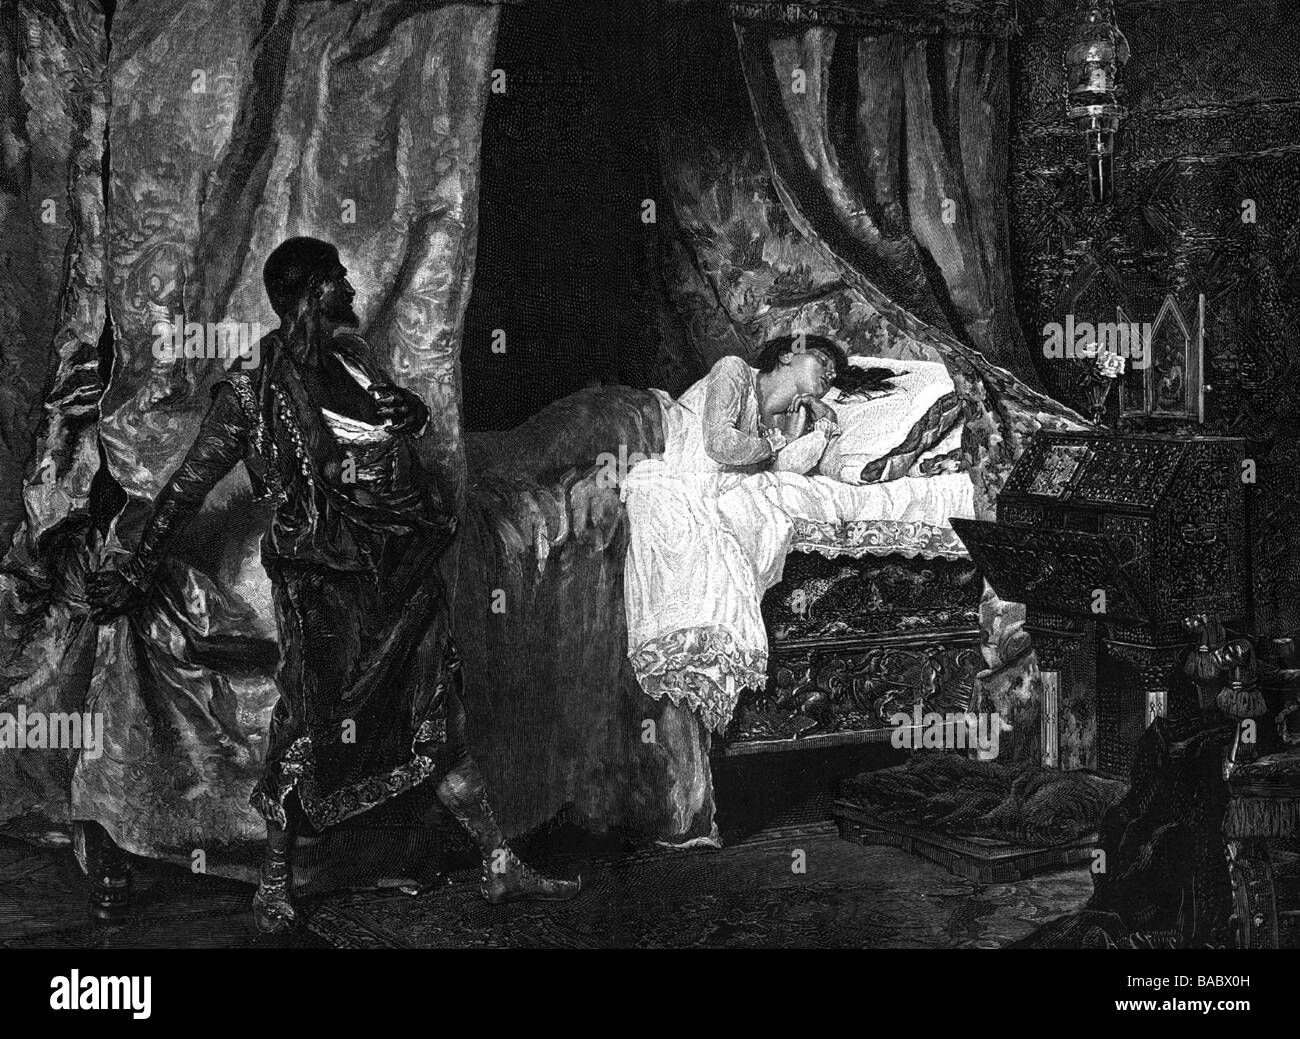 Munoz Degrain, Antonio, 1840 - 1924, peintre espagnol, sa peinture 'Othello et Desmodena', gravure sur cuivre, l'artiste n'a pas d'auteur pour être effacé Banque D'Images